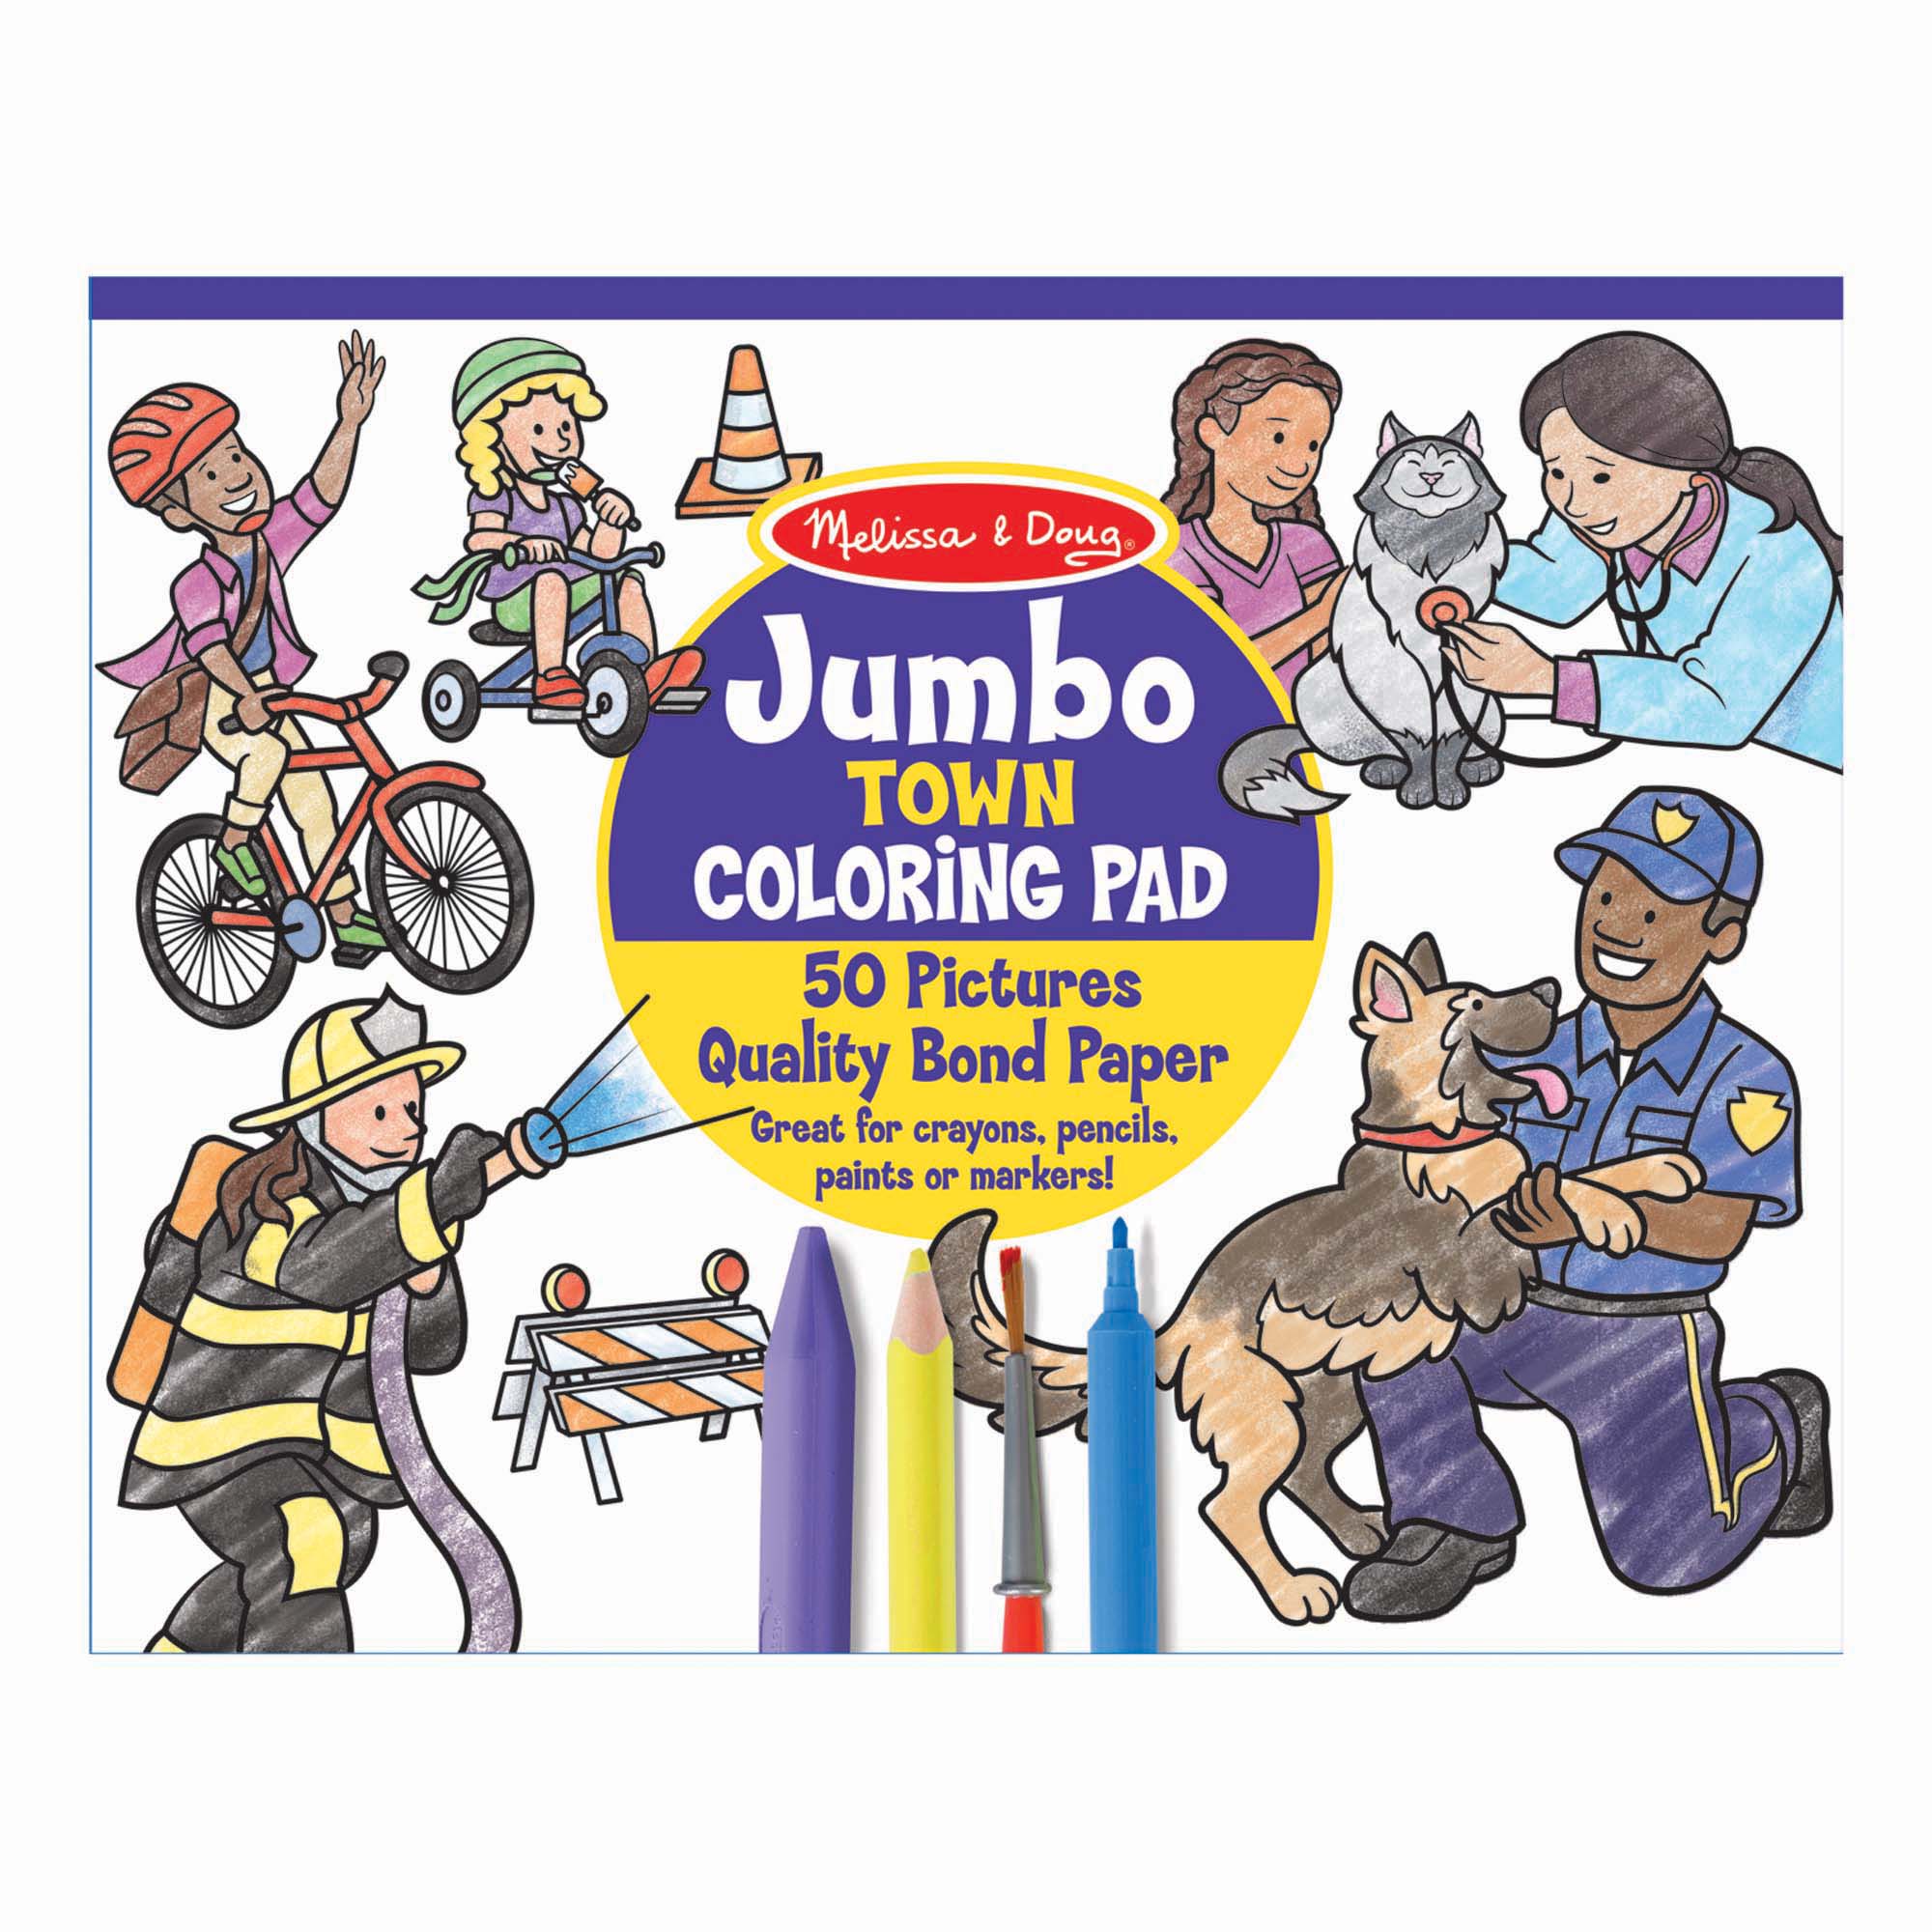 Melissa & Doug รุ่น 30250  Jumbo Coloring Pad - Town ชุดสมุดระบายสีจั้มโบ้ รุ่นเมือง ช่วยส่งเสริมการเรียนรู้ของเด็กที่มีความสนใจการระบายสี